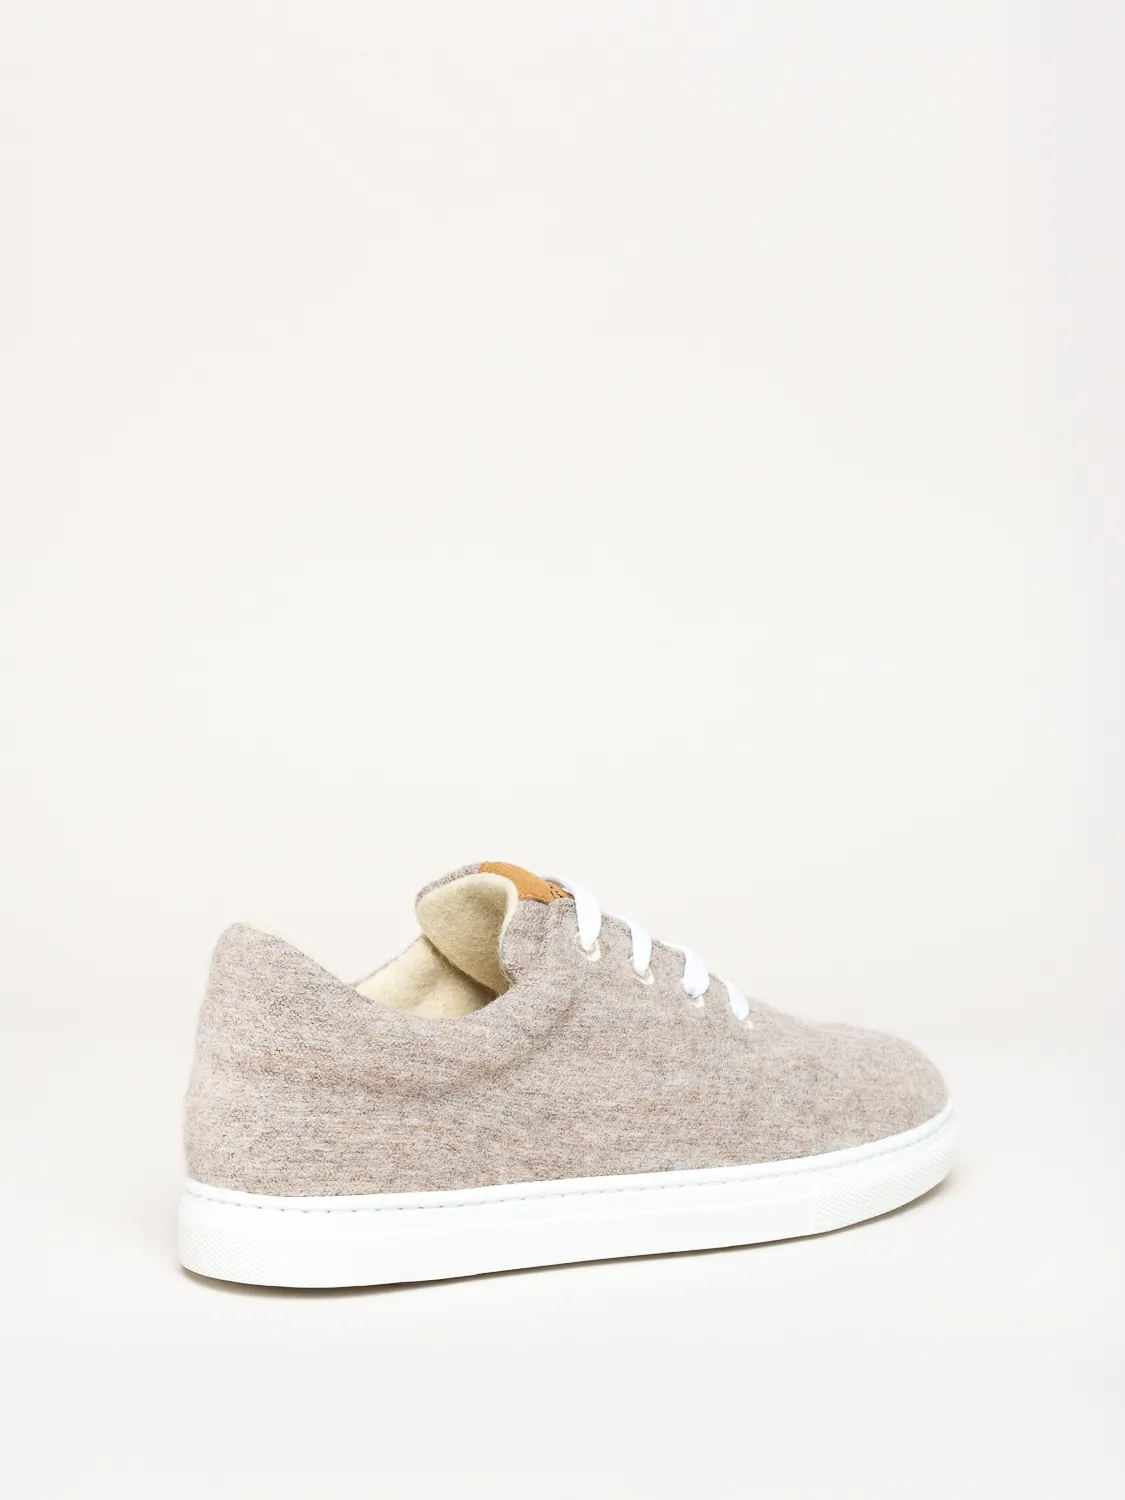 Gottstein-Wool-Walker-101-Woll-Sneaker-beige (5)